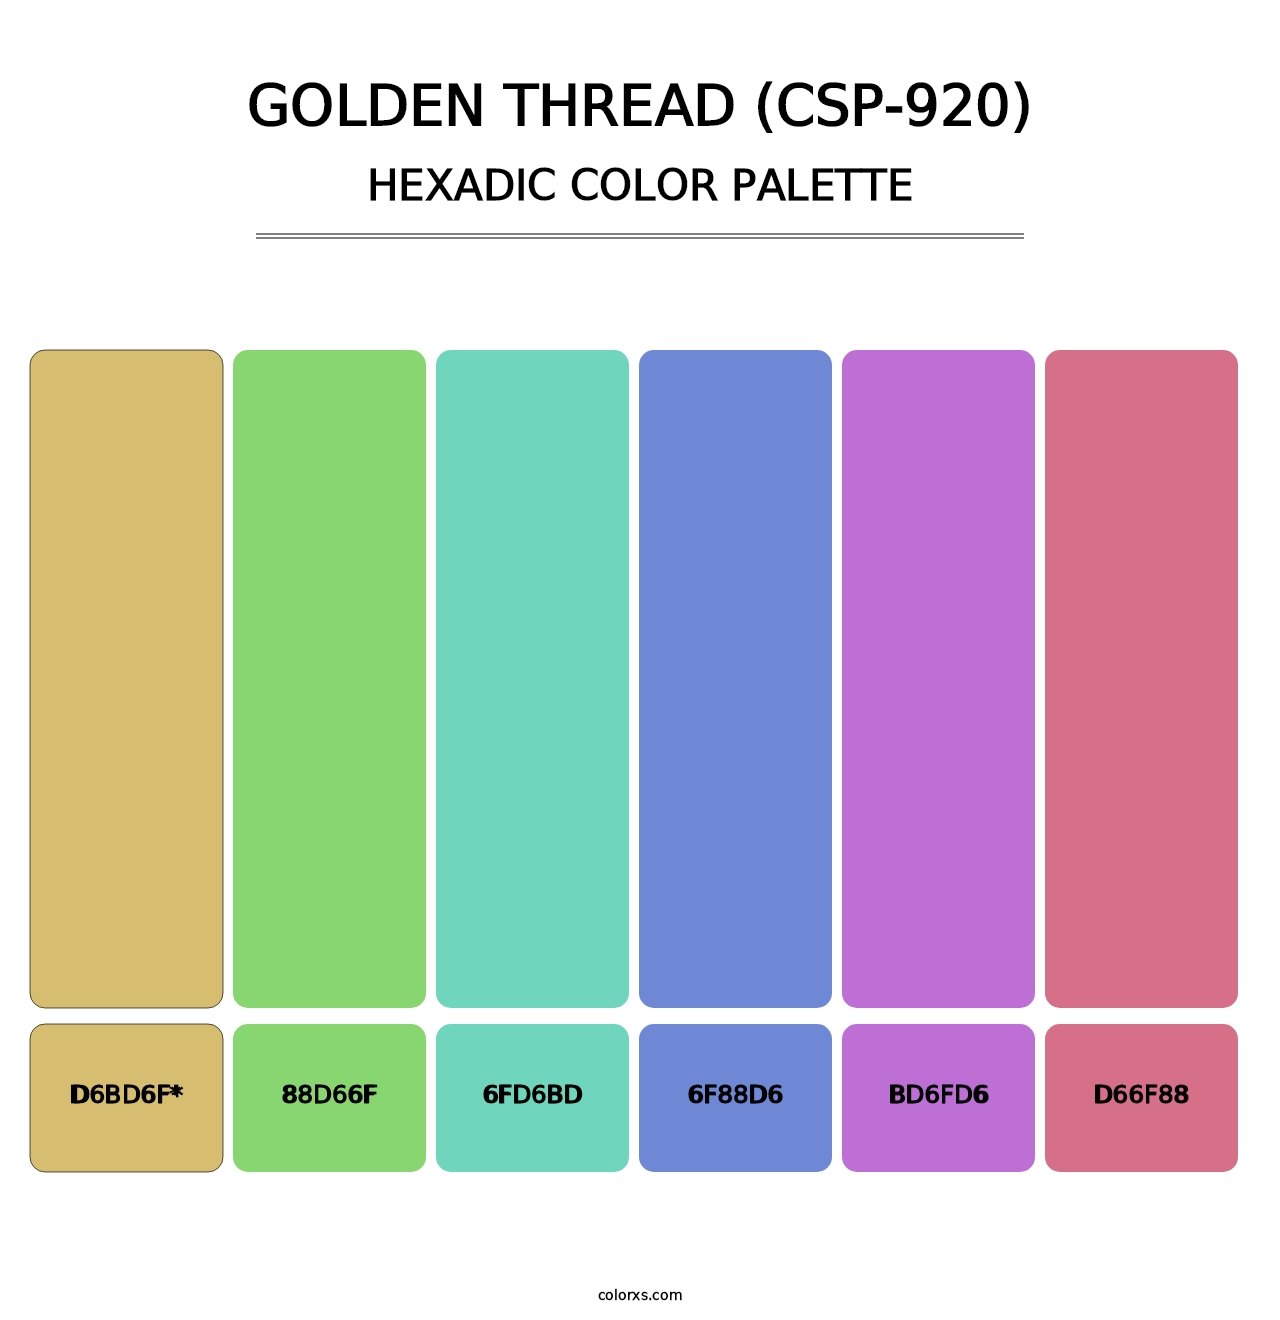 Golden Thread (CSP-920) - Hexadic Color Palette